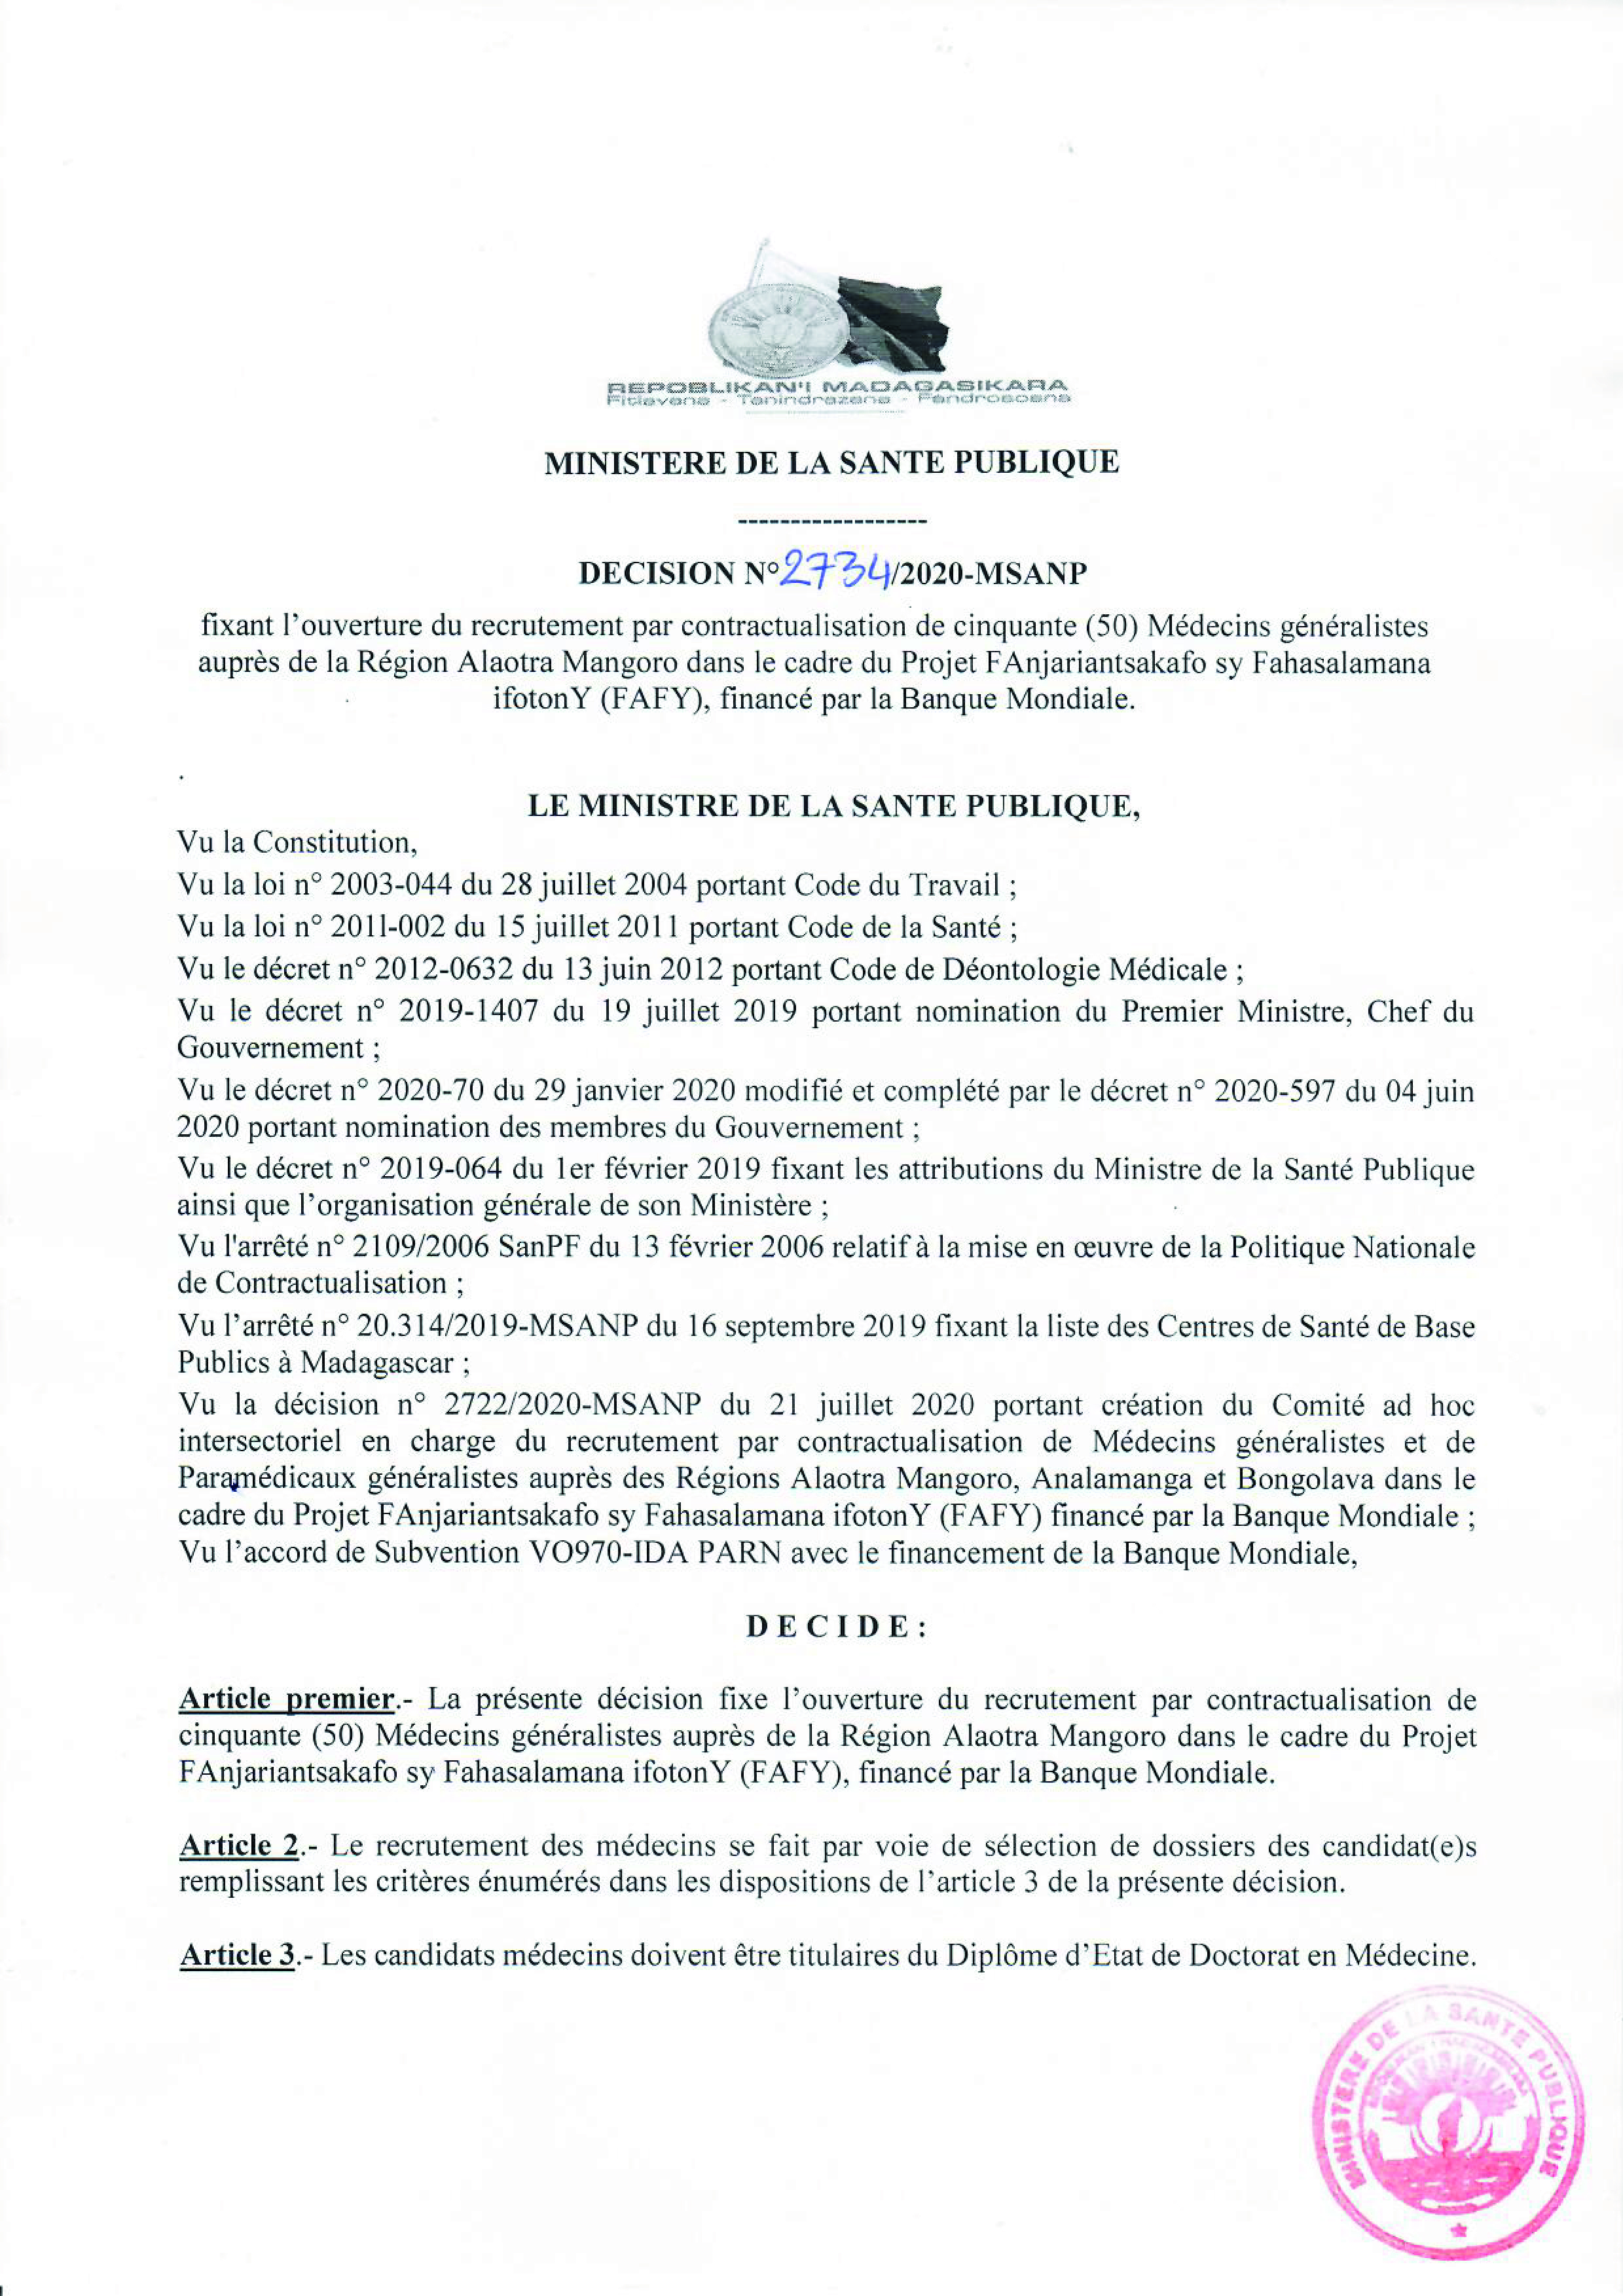 PROJET FAFY: Decision n° 2734 recrutement par contactualisation de 50 Médecins généralistes auprès de la Région Alaotra Mangoro, financé par la Banque Mondiale.